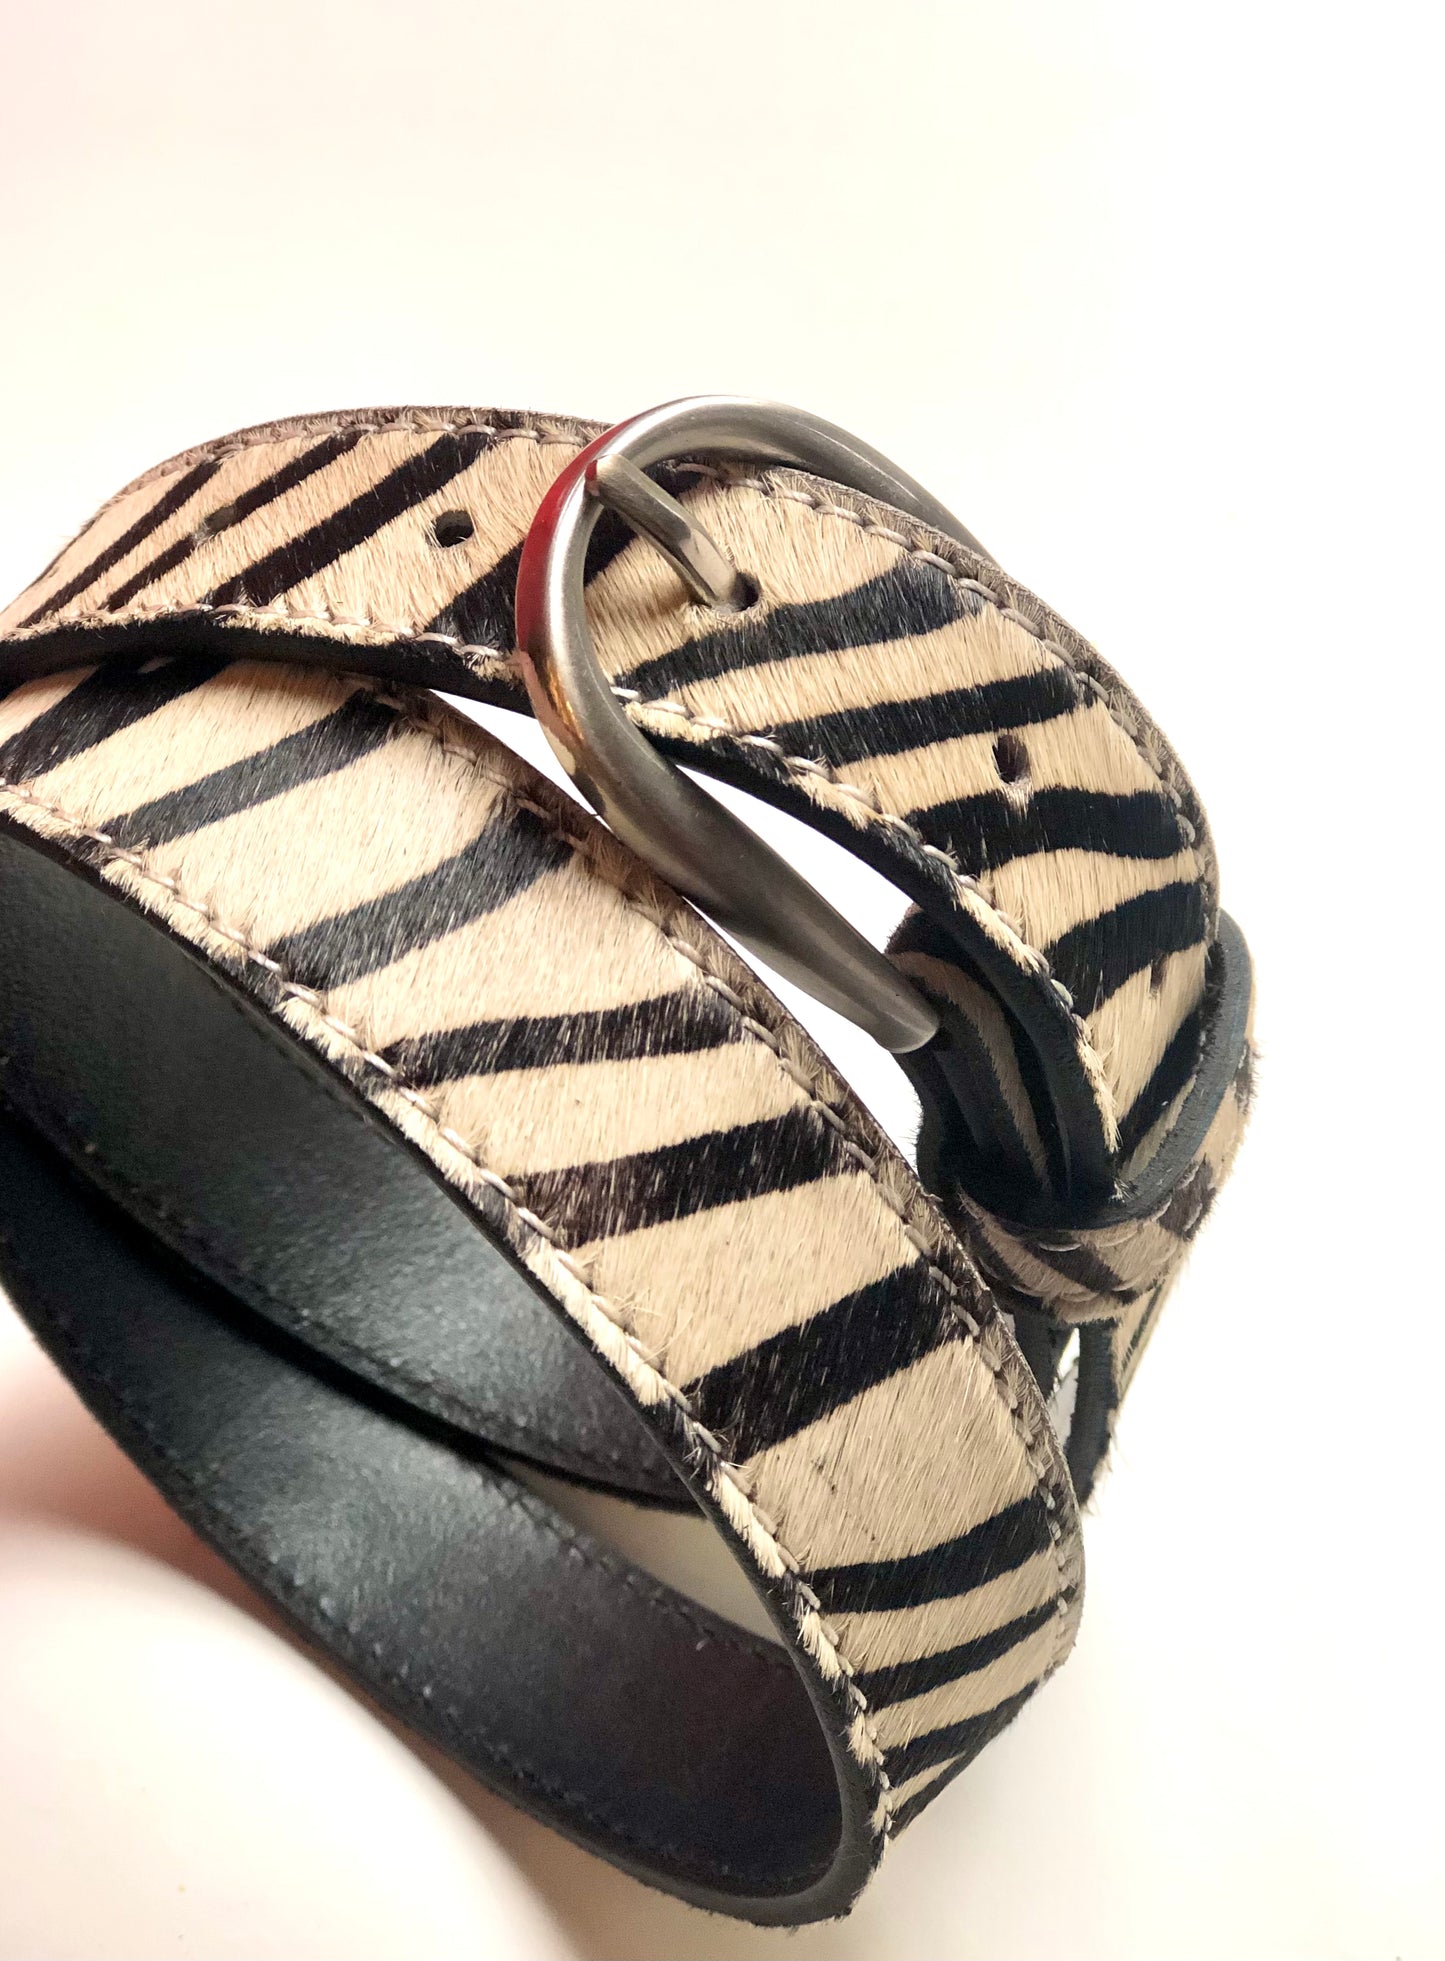 Zebra hair-on-hide leather women belt Silver buckle